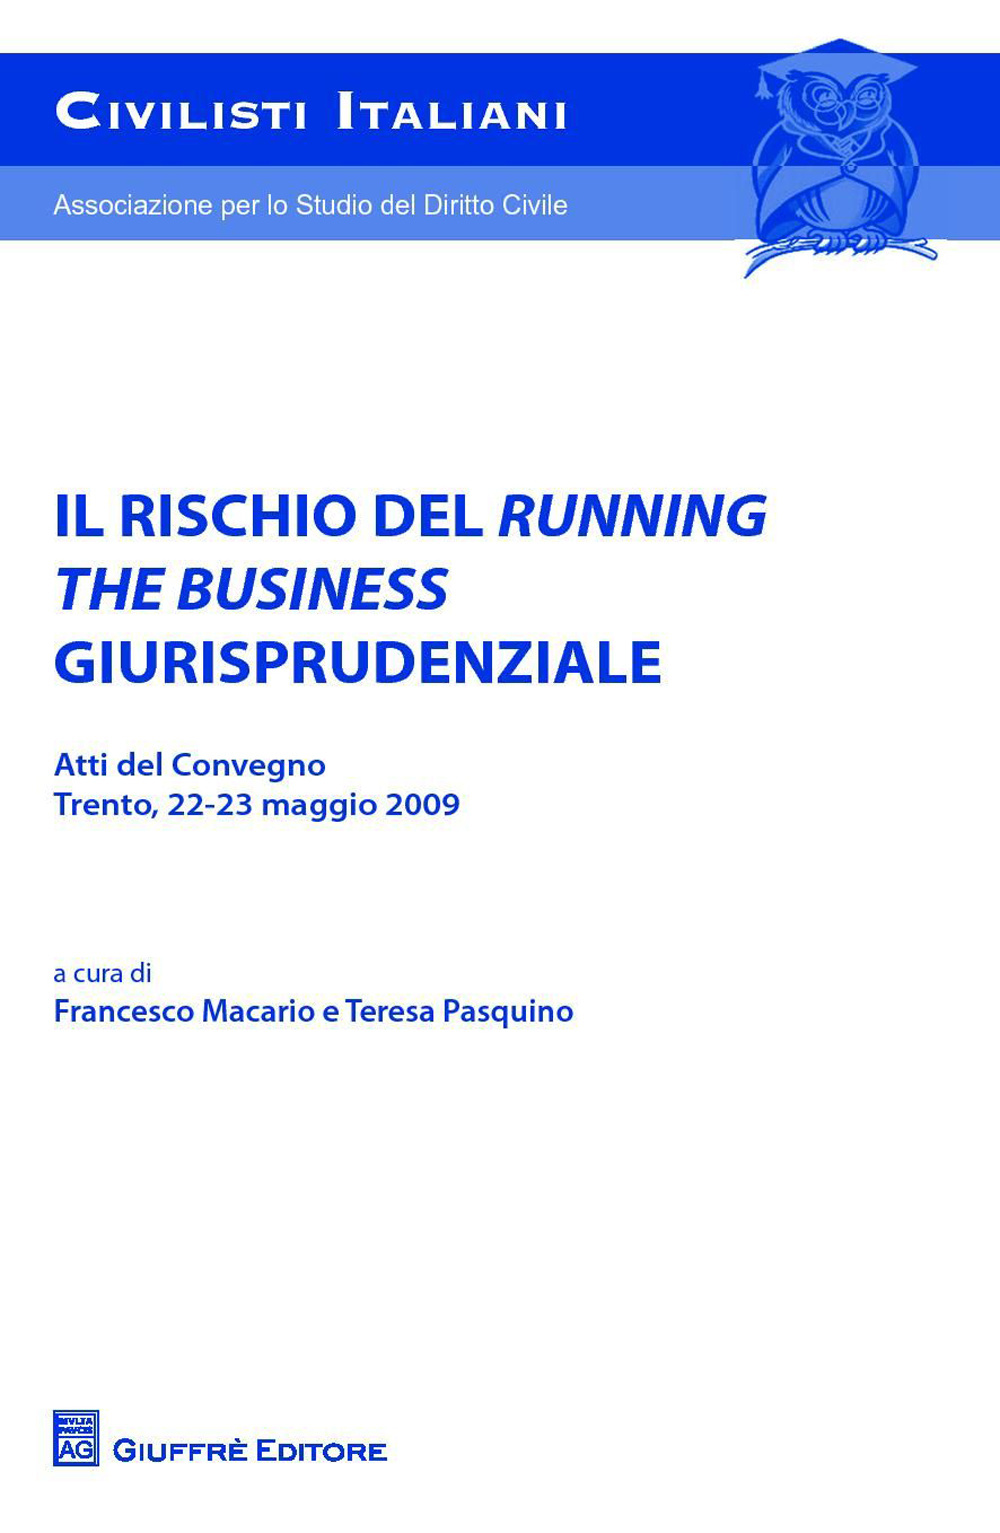 Il rischio del running the business giurisprudenziale. Trento, 22-23 maggio 2009